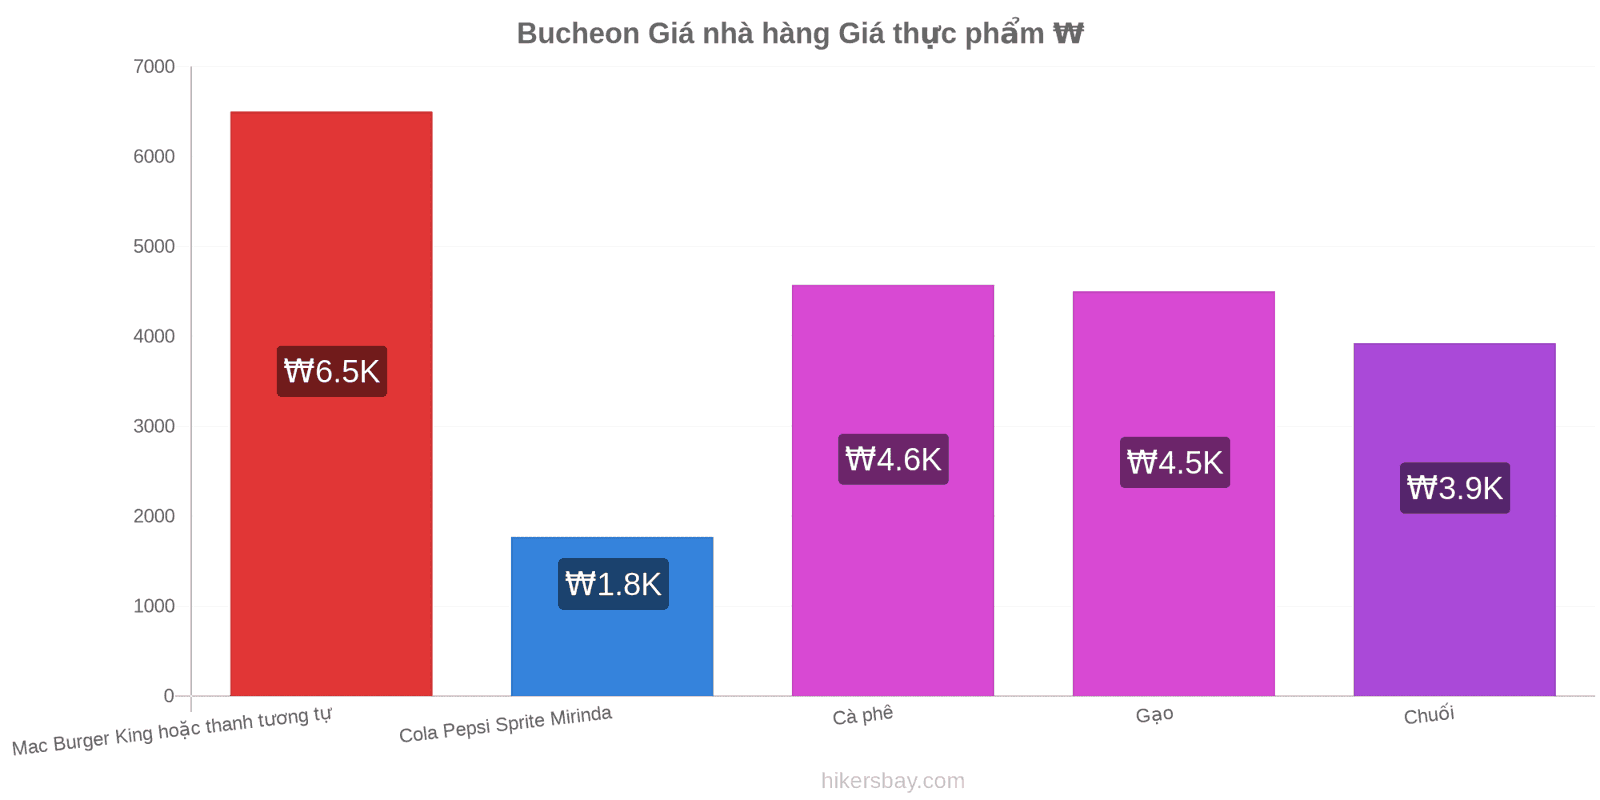 Bucheon thay đổi giá cả hikersbay.com